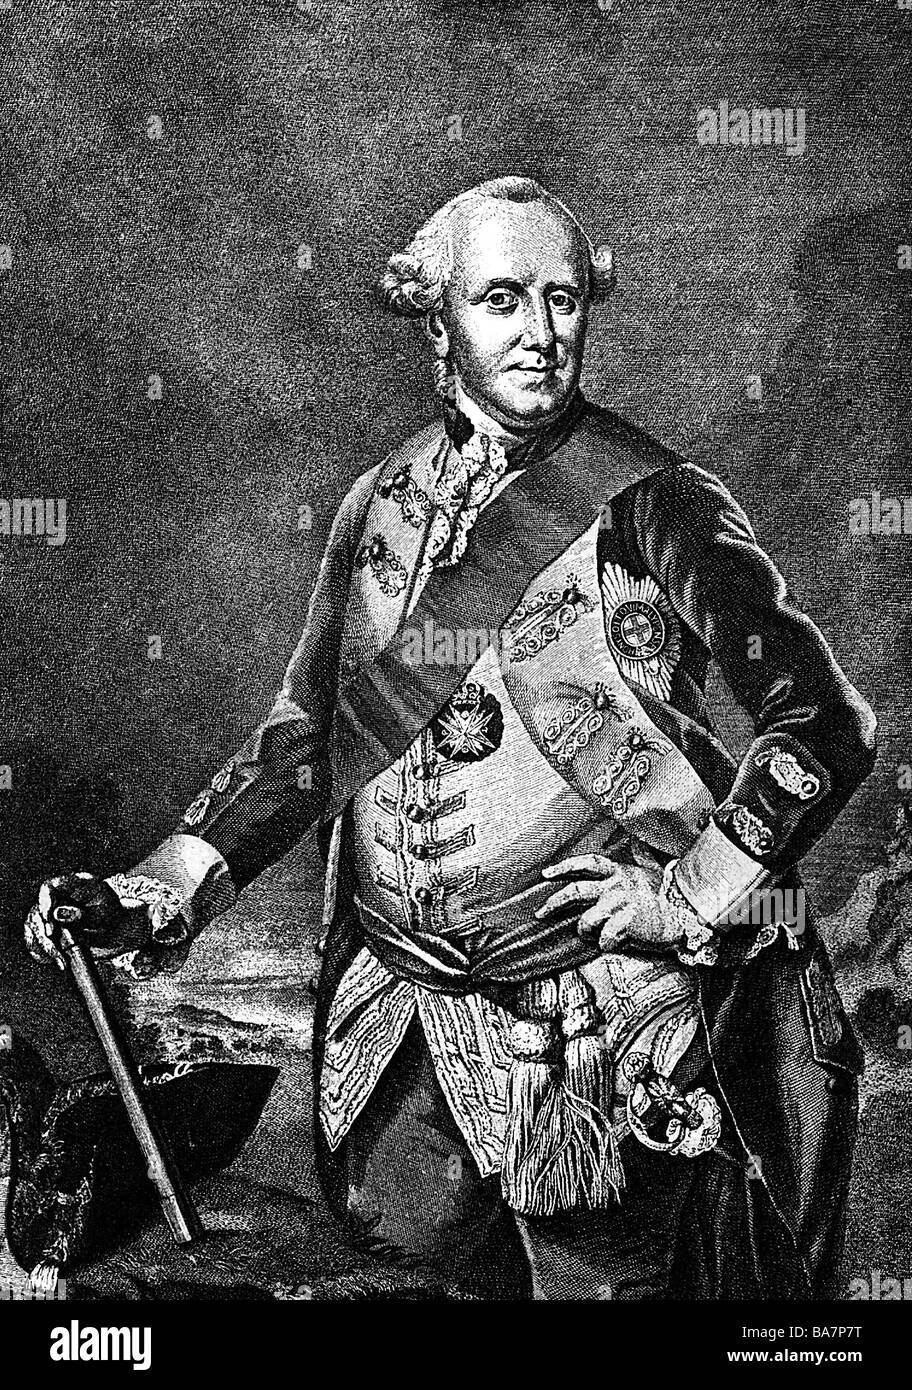 Brunswick, il duca Ferdinando di, 12.1.1721 - 3.7.1792, incisione su legno dopo incisione su rame di J. Houbraken, artista del diritto d'autore non deve essere cancellata Foto Stock